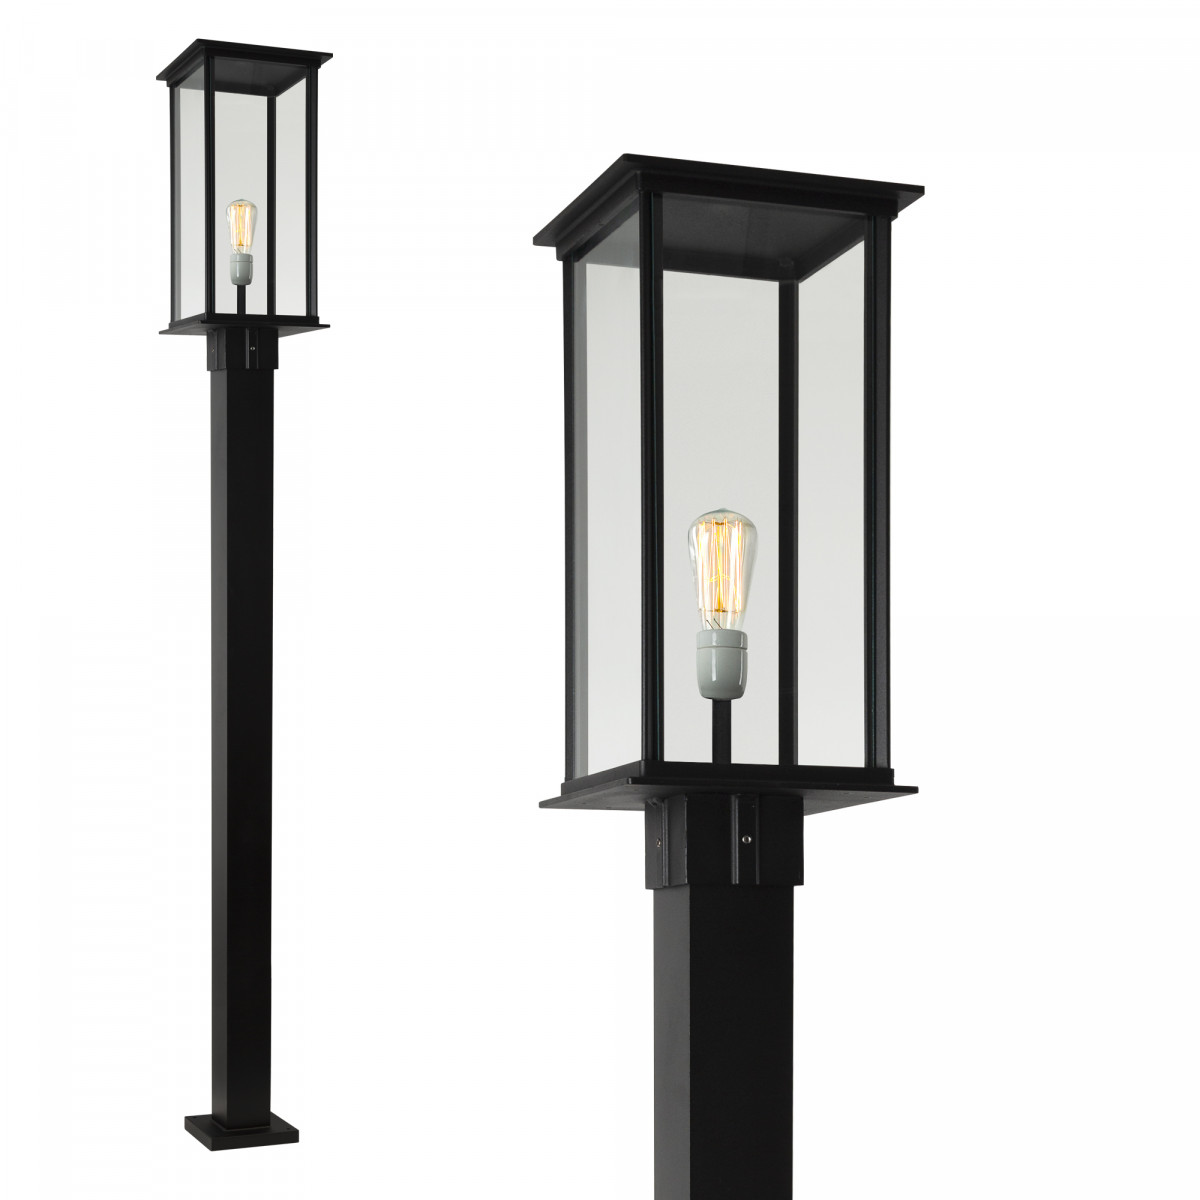 Tuinlamp Capital lantaarn 1 lichts zwart kwaliteitsverlichting van KS Verlichting exclusieve tuinverlichting sfeervol en functioneel